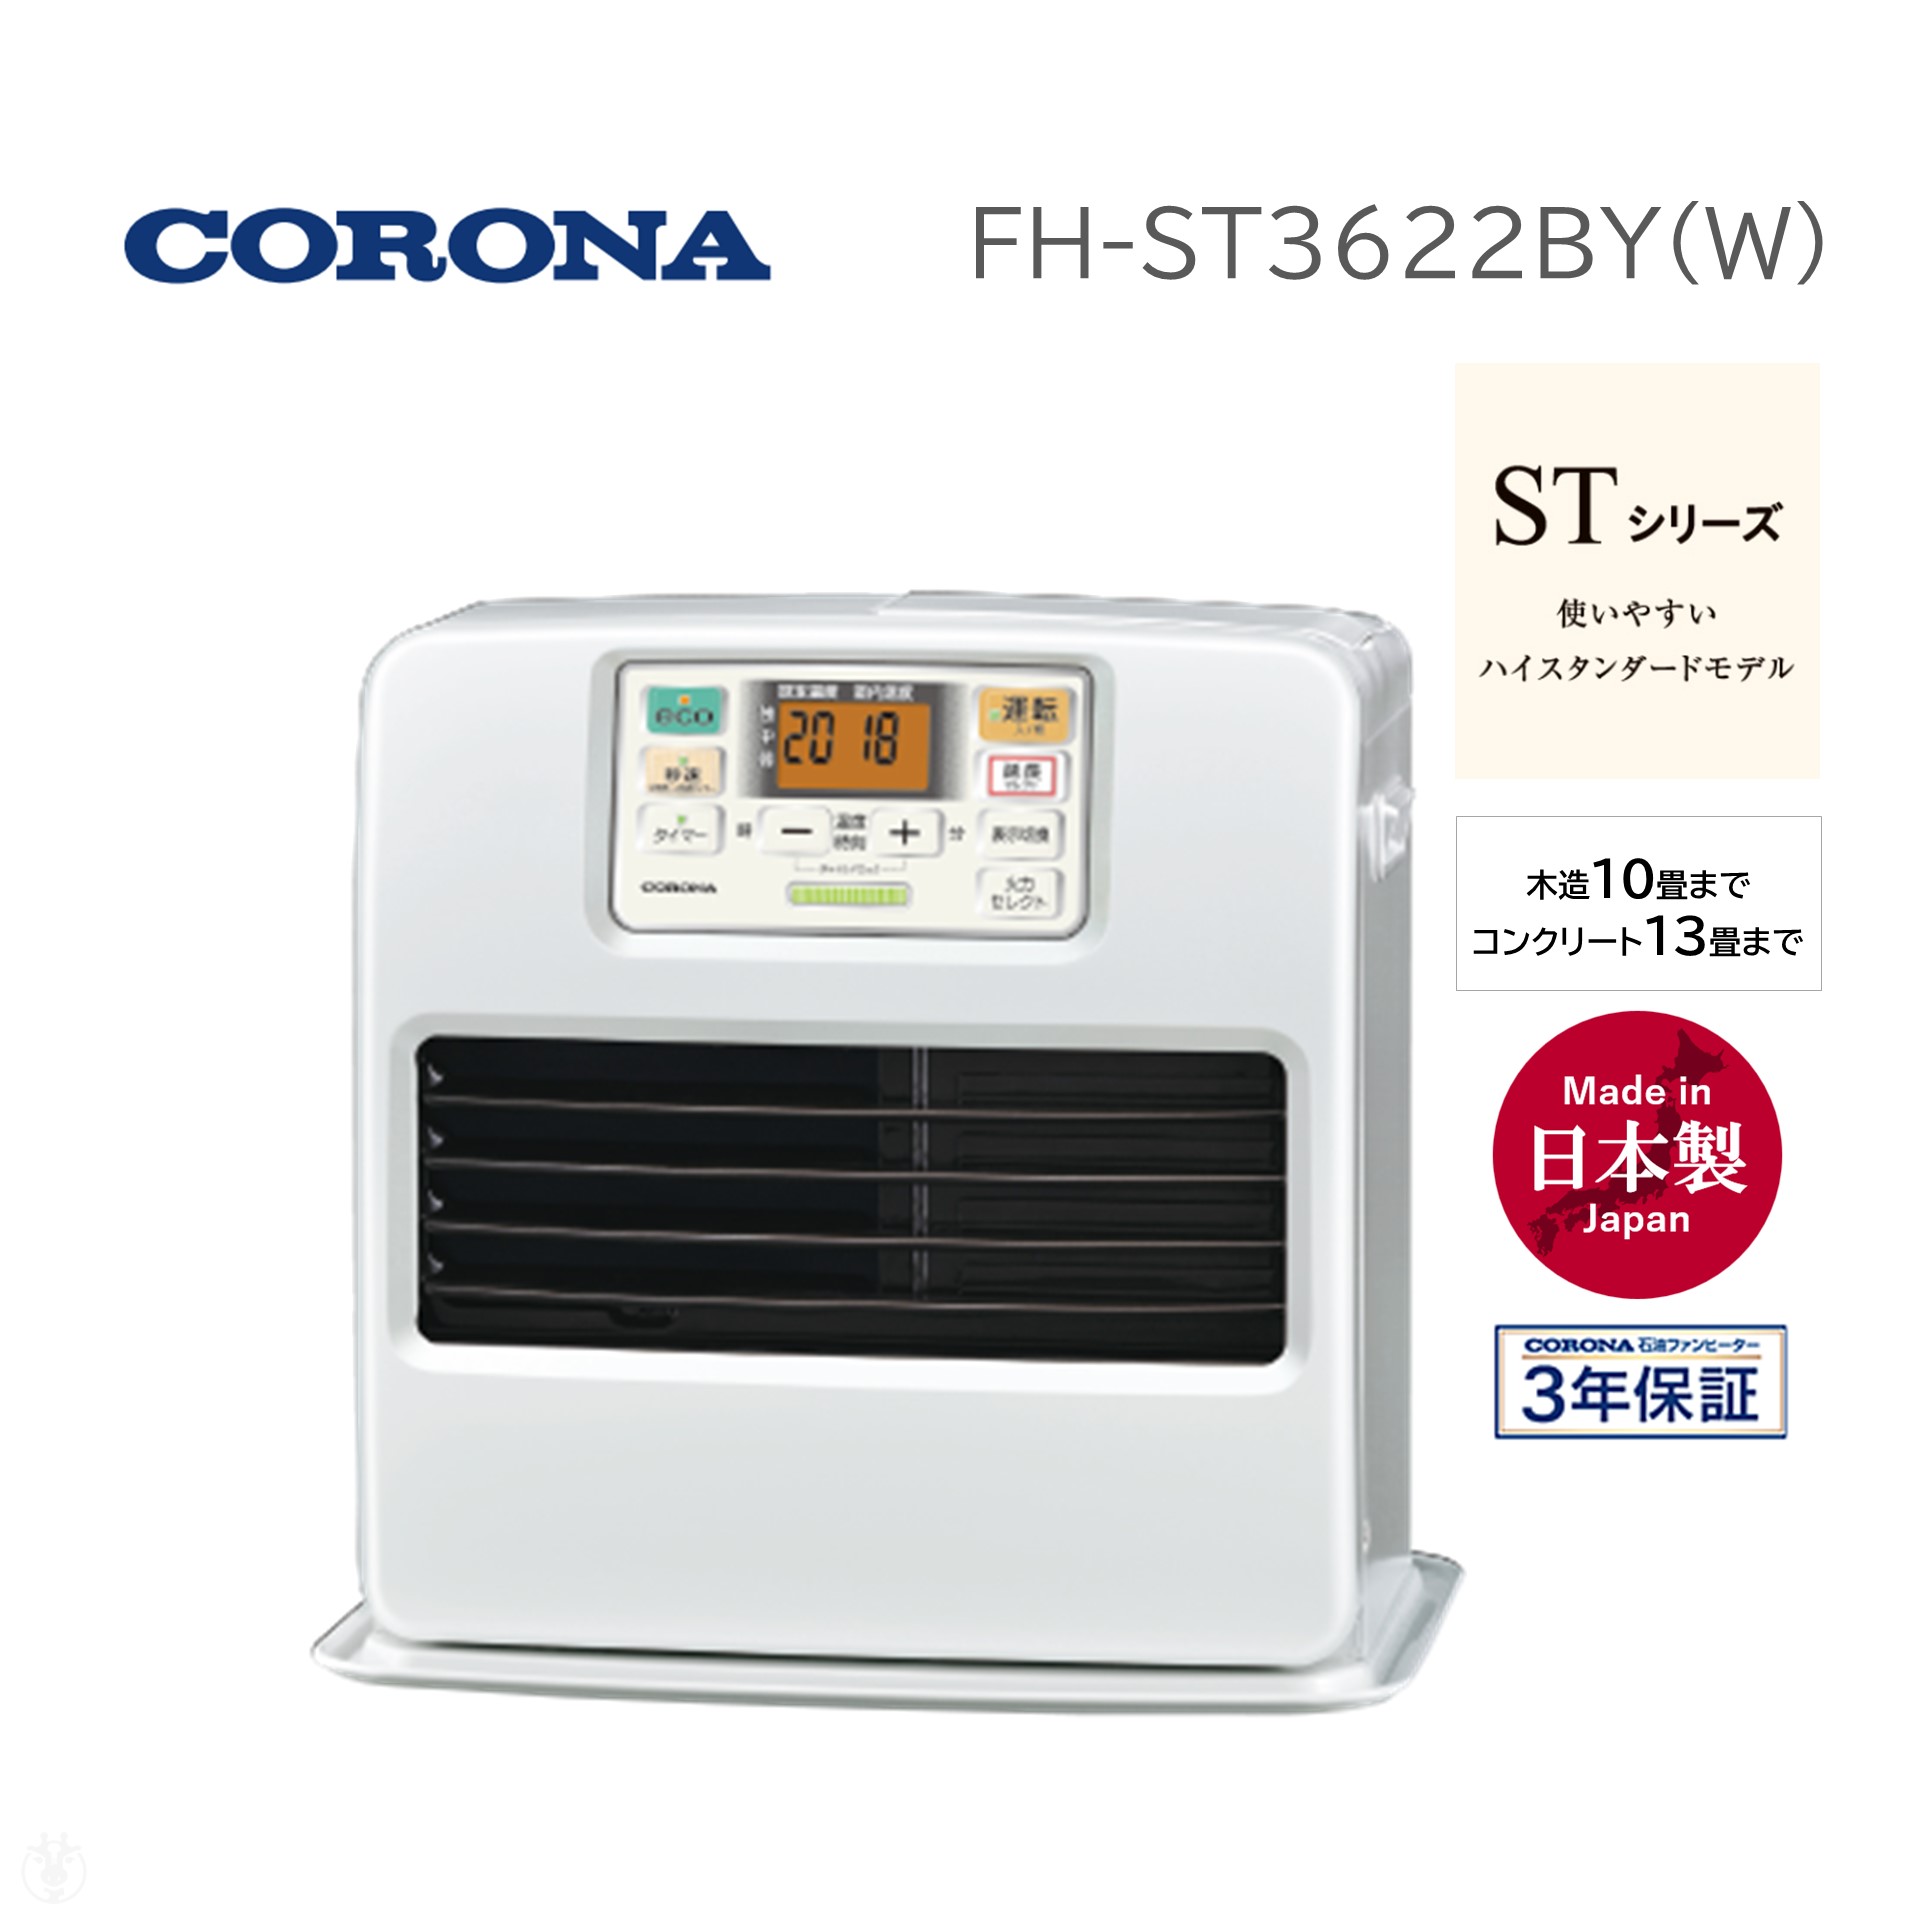 コロナ CORONA FH-ST3622BY (W) パールホワイト STシリーズ 石油ファン 